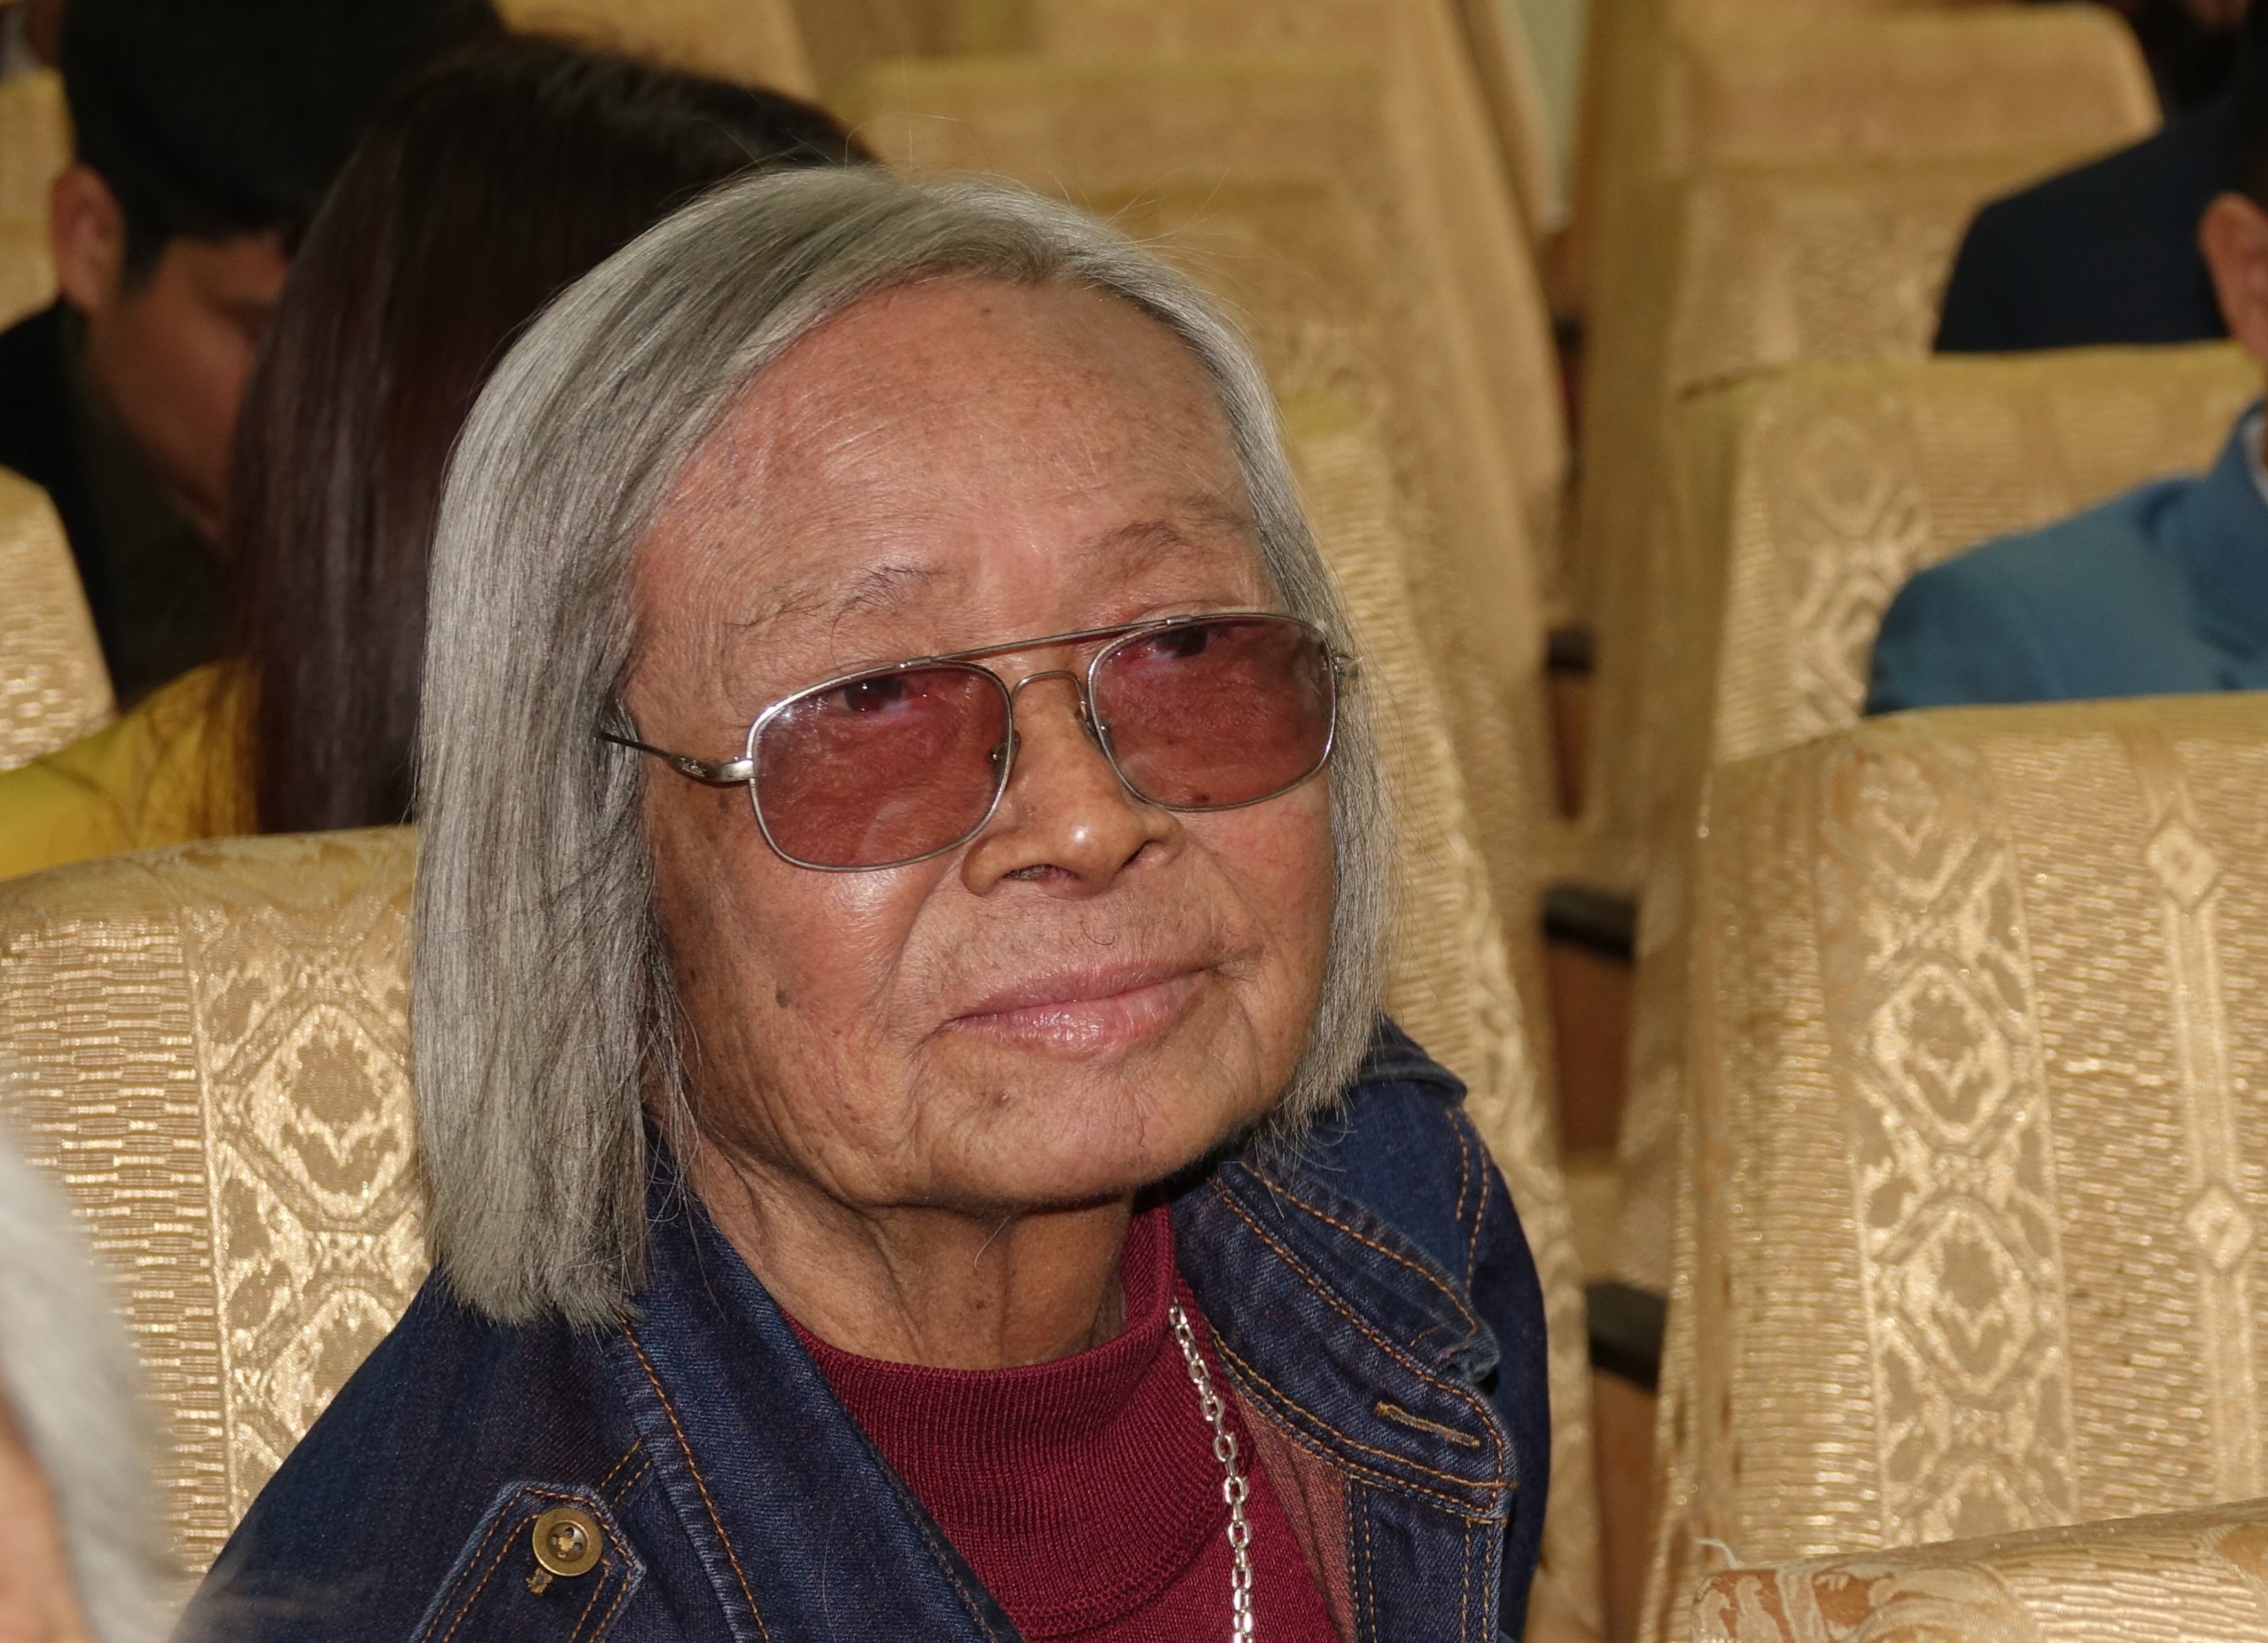 Nhà thơ Lê Huy Quang - vóc mặt em góc nhà sắc sẫm - 2